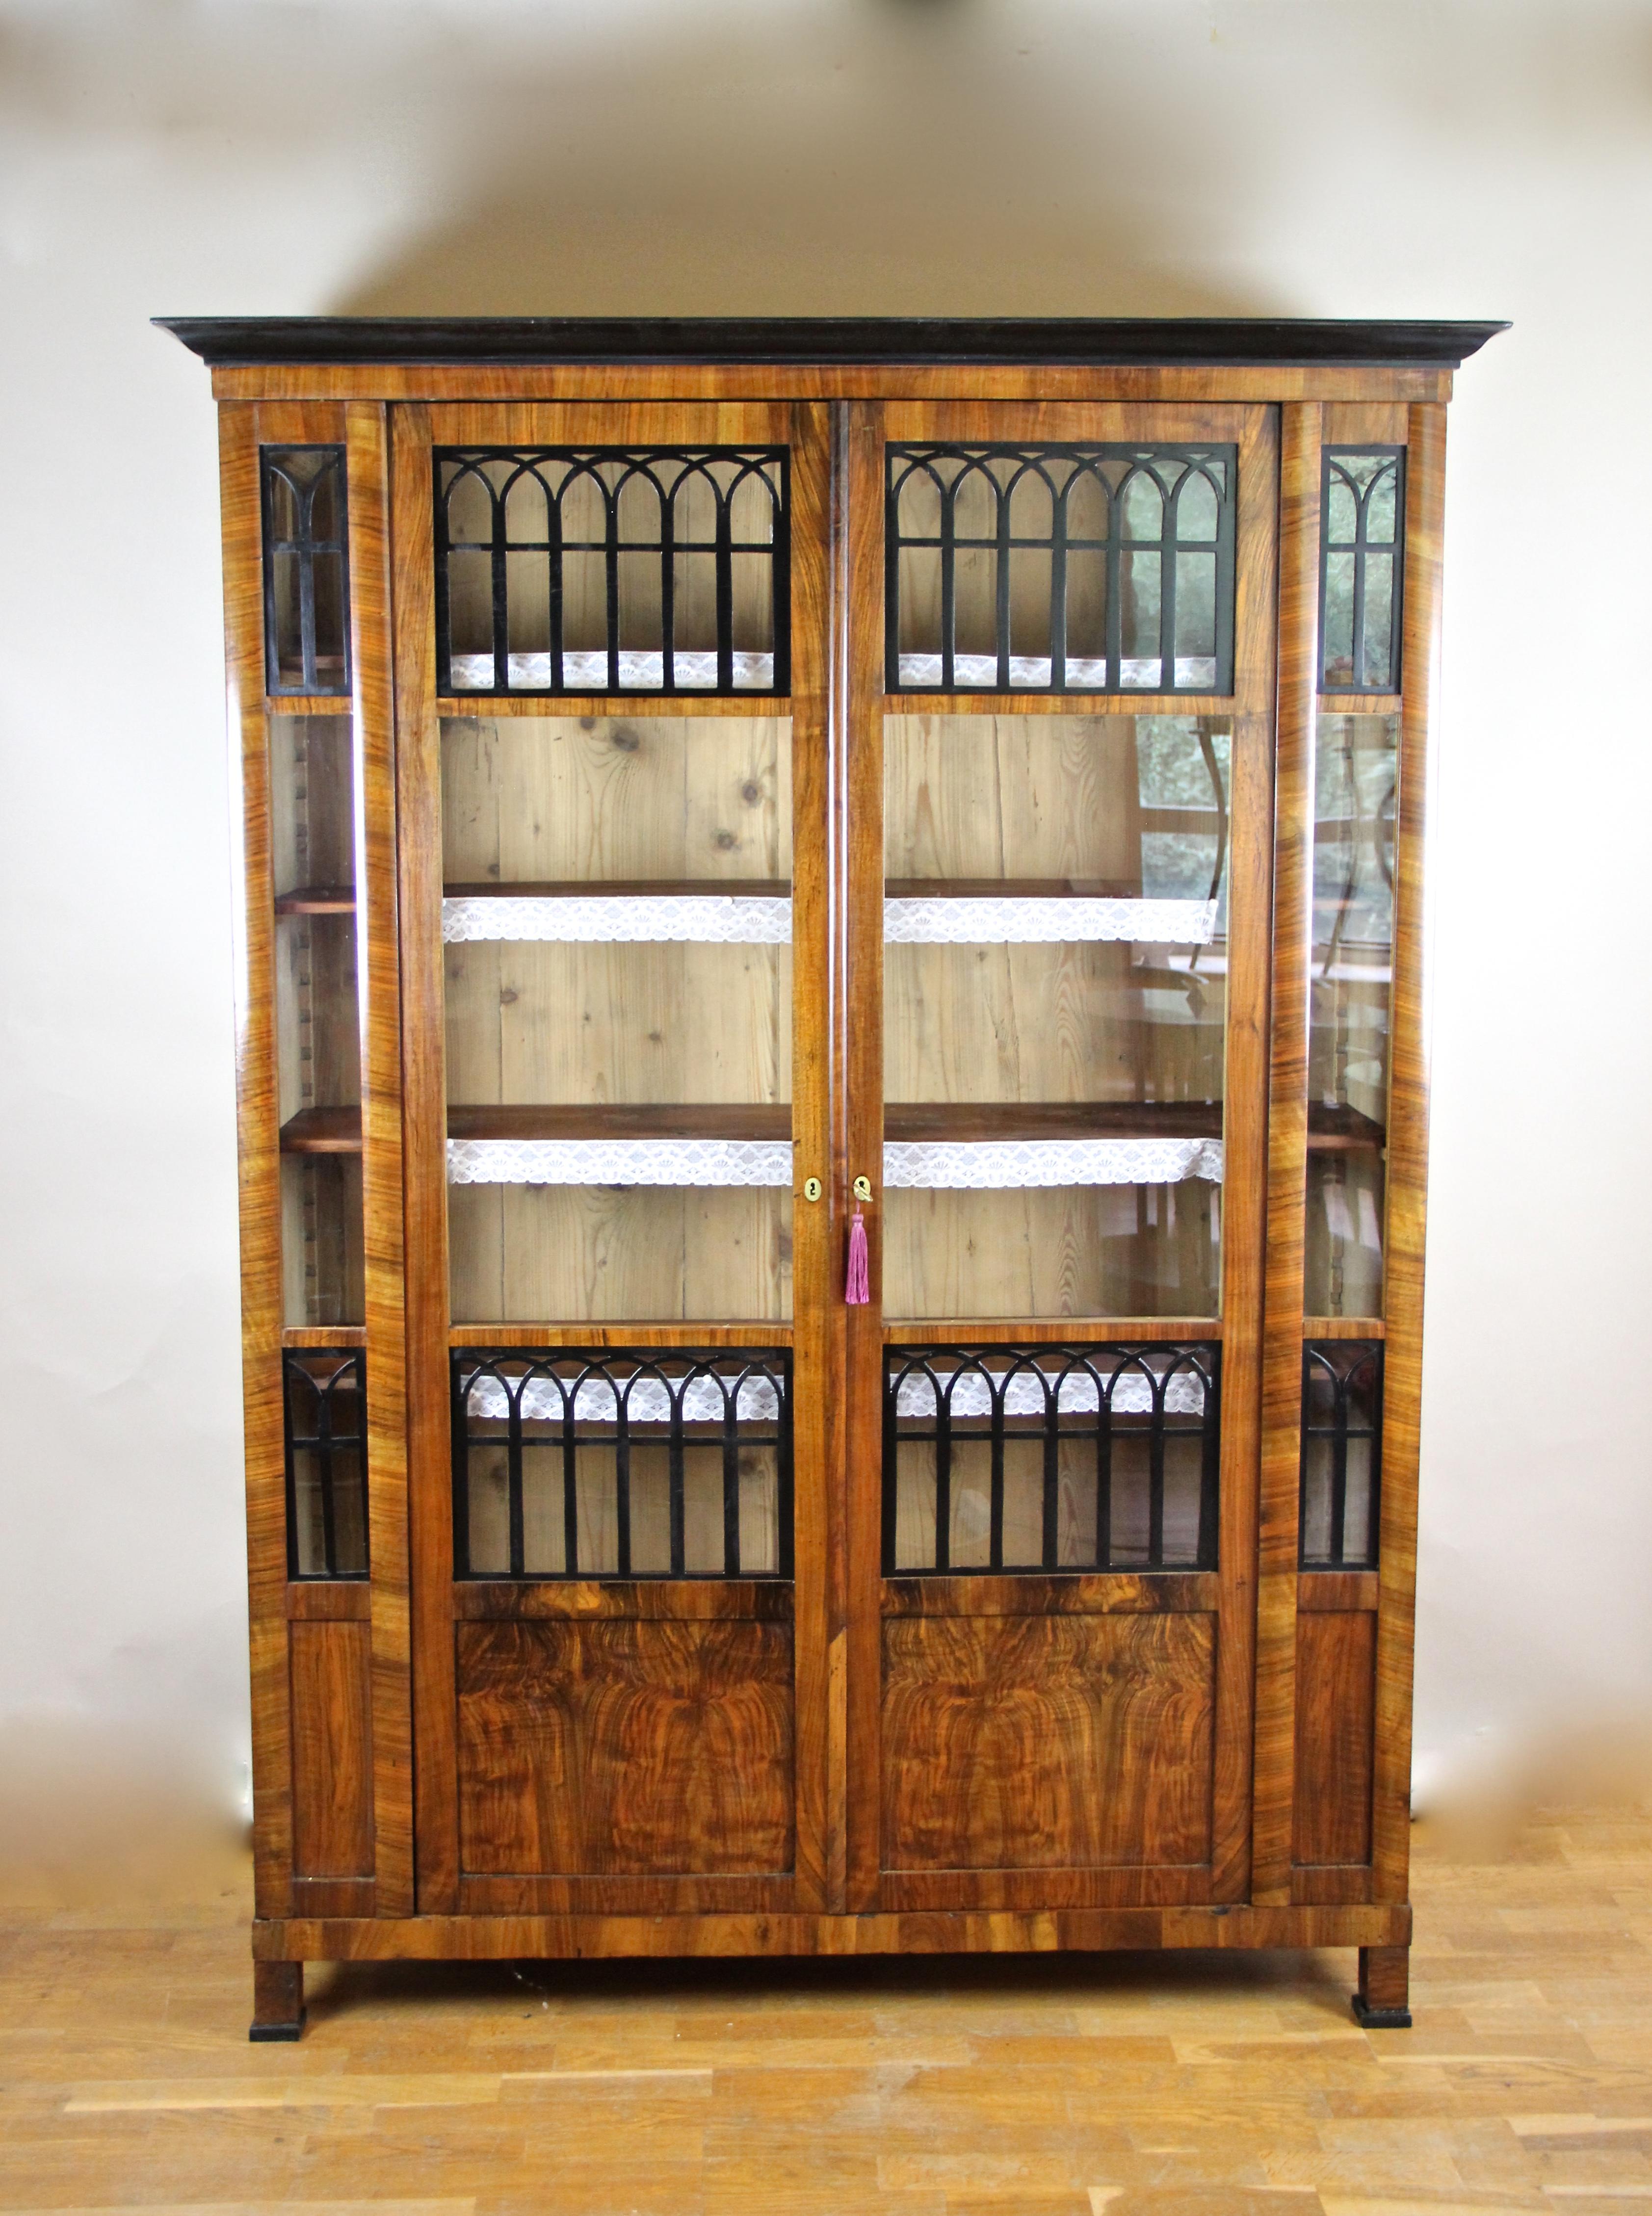 Hervorragender Biedermeier Schrank/ Bücherregal aus der Biedermeierzeit  in Österreich um  1830. Dieser schlanke antike Schrank ist mit schönem Wurzelnuss und feinem Nussbaumholz furniert und verfügt über zwei Türen mit großen Glasscheiben, die